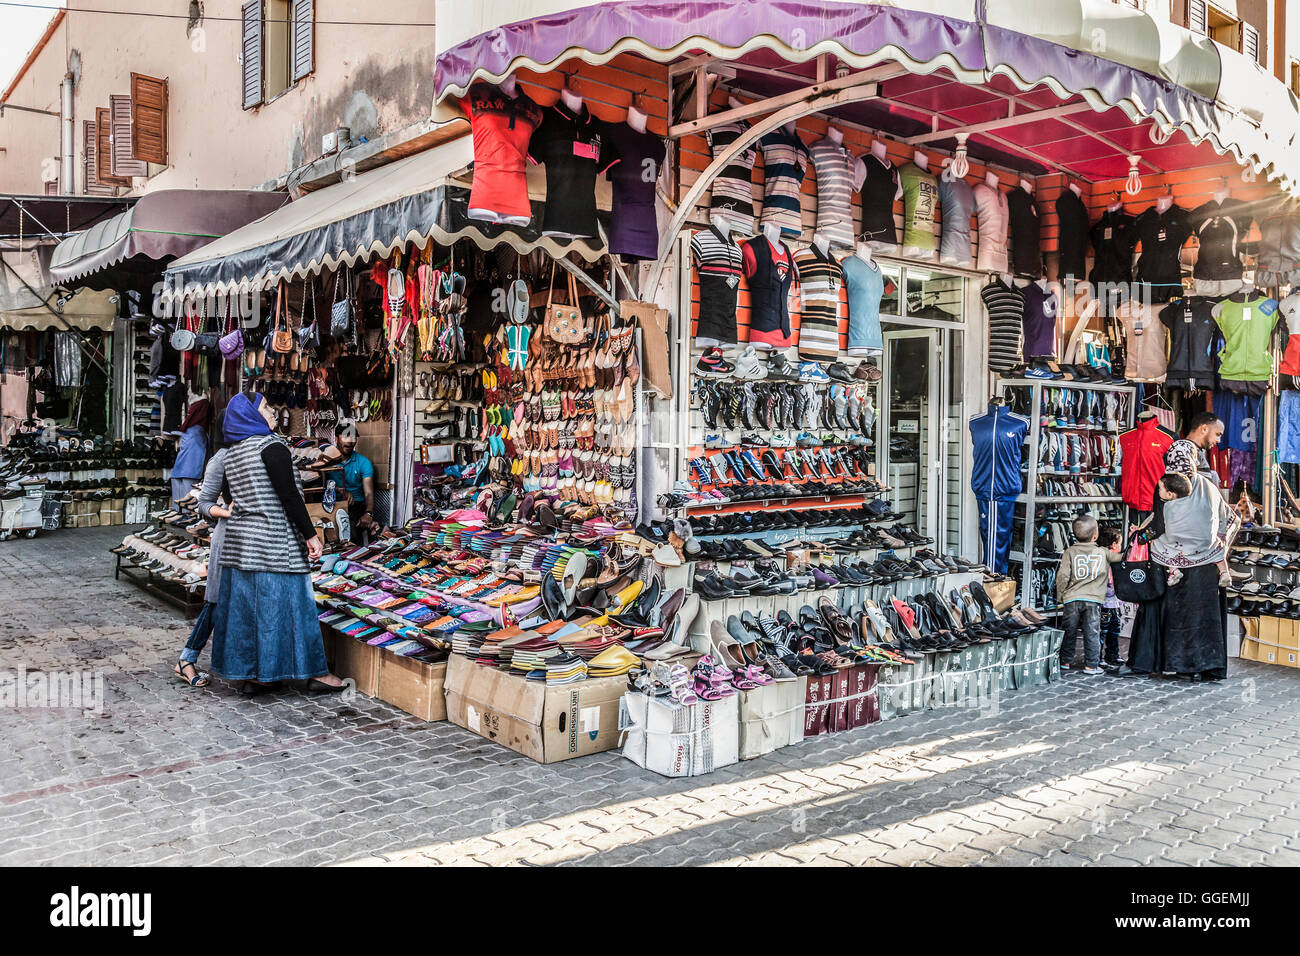 Fournisseurs et consommateurs dans un groupe d'étals de vente chaussures, sacs et vêtements de sport dans une rue au centre-ville de Ouarzazate, Maroc. Banque D'Images